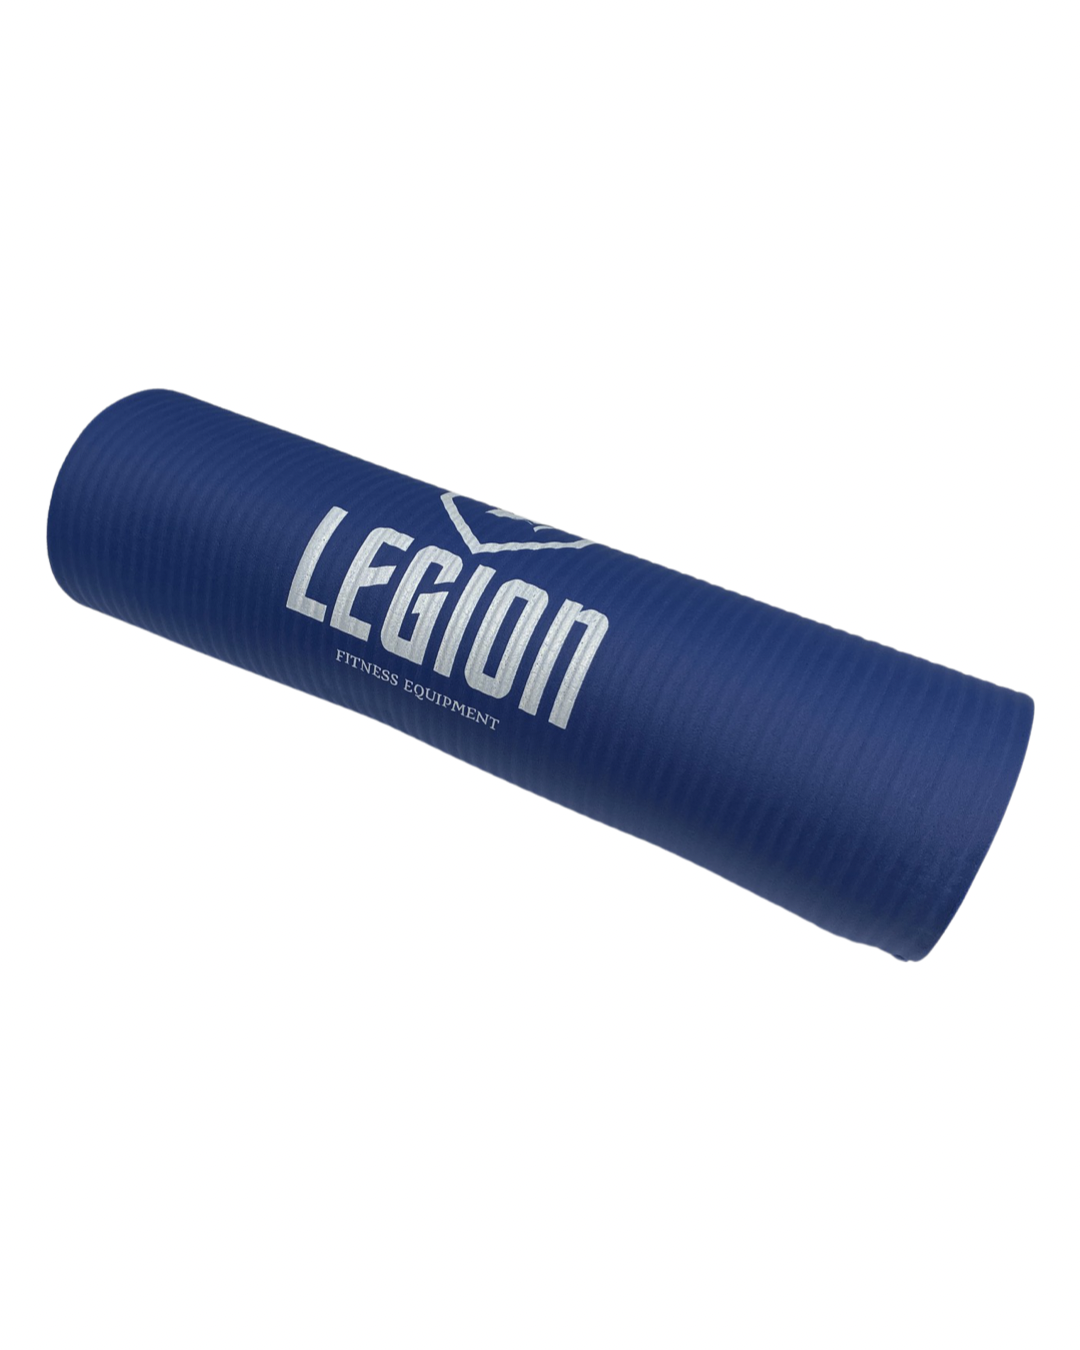 Legion Gym Mat